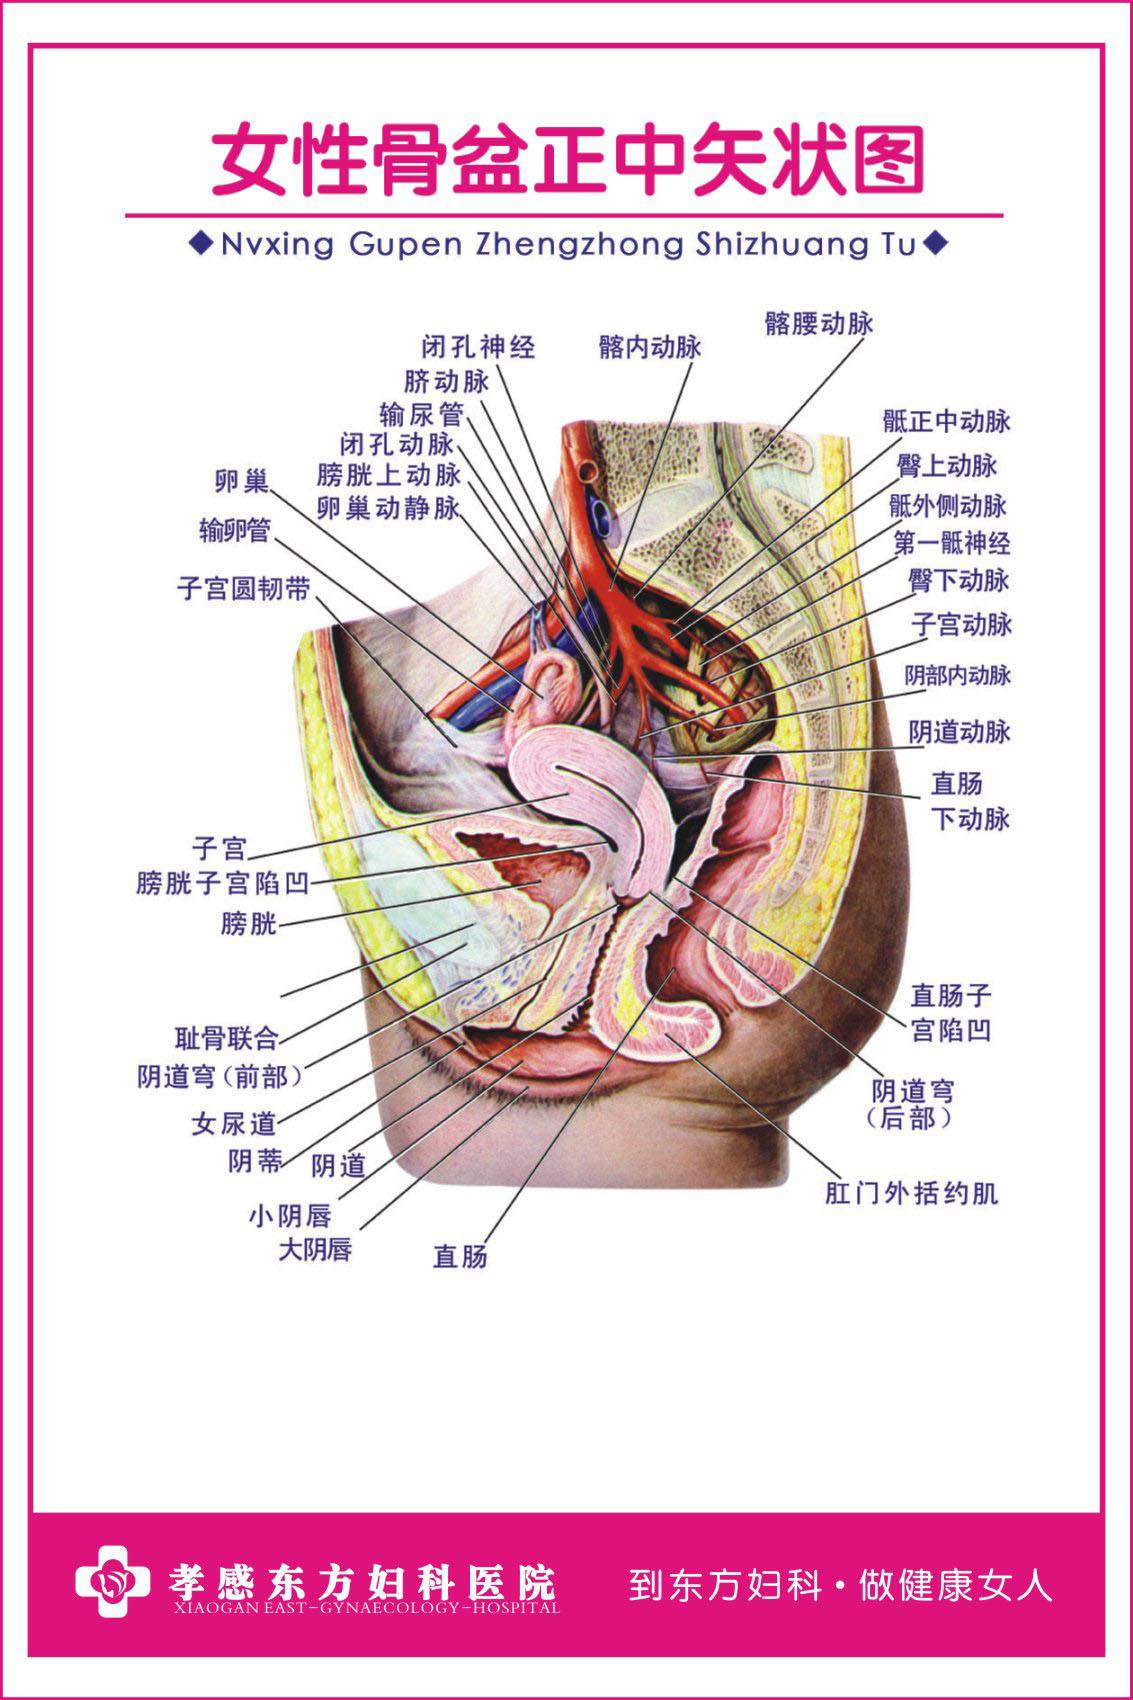 人体器官图左侧肋骨下方人体器官图